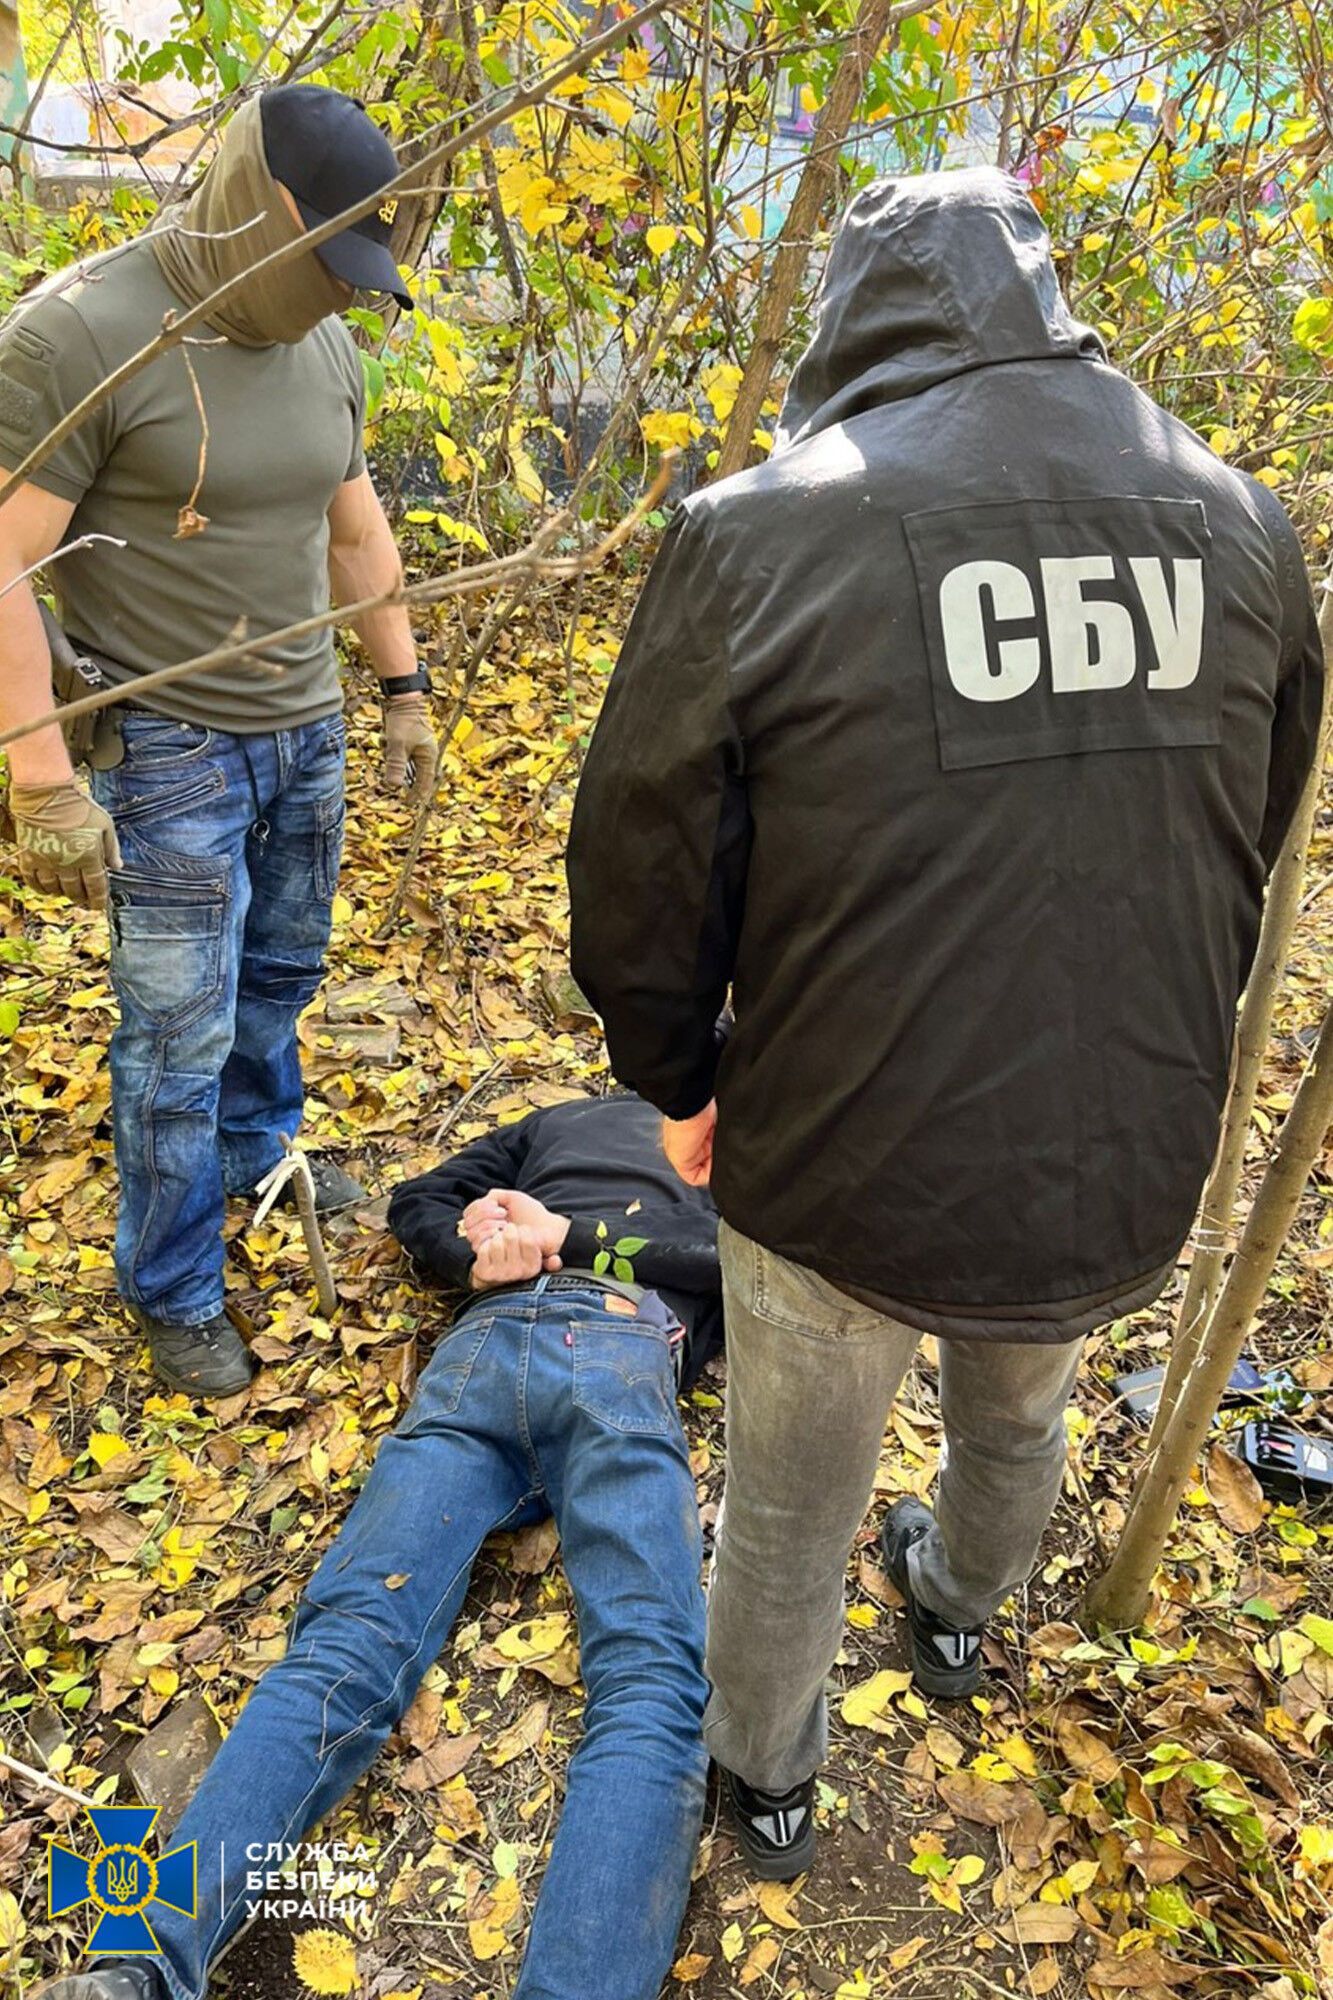 СБУ задержала агента ГРУ РФ, готовившего взрывы на Одесской железной дороге: для конспирации менял внешность. Фото